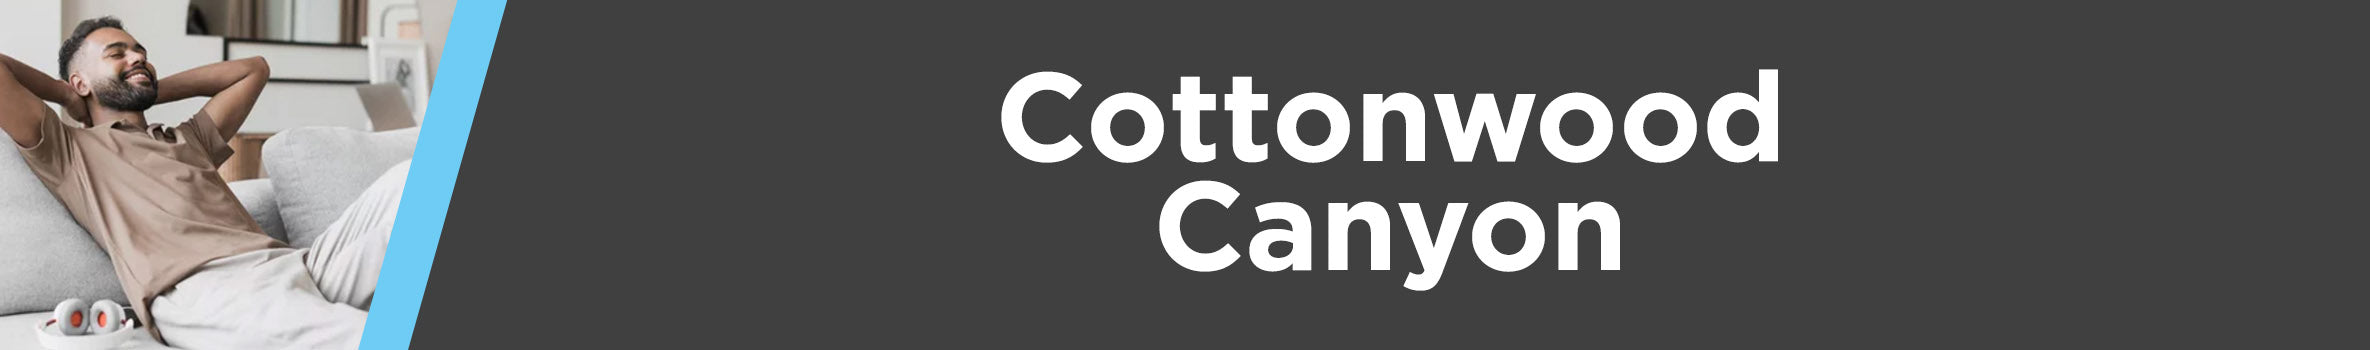 Cottonwood Canyon